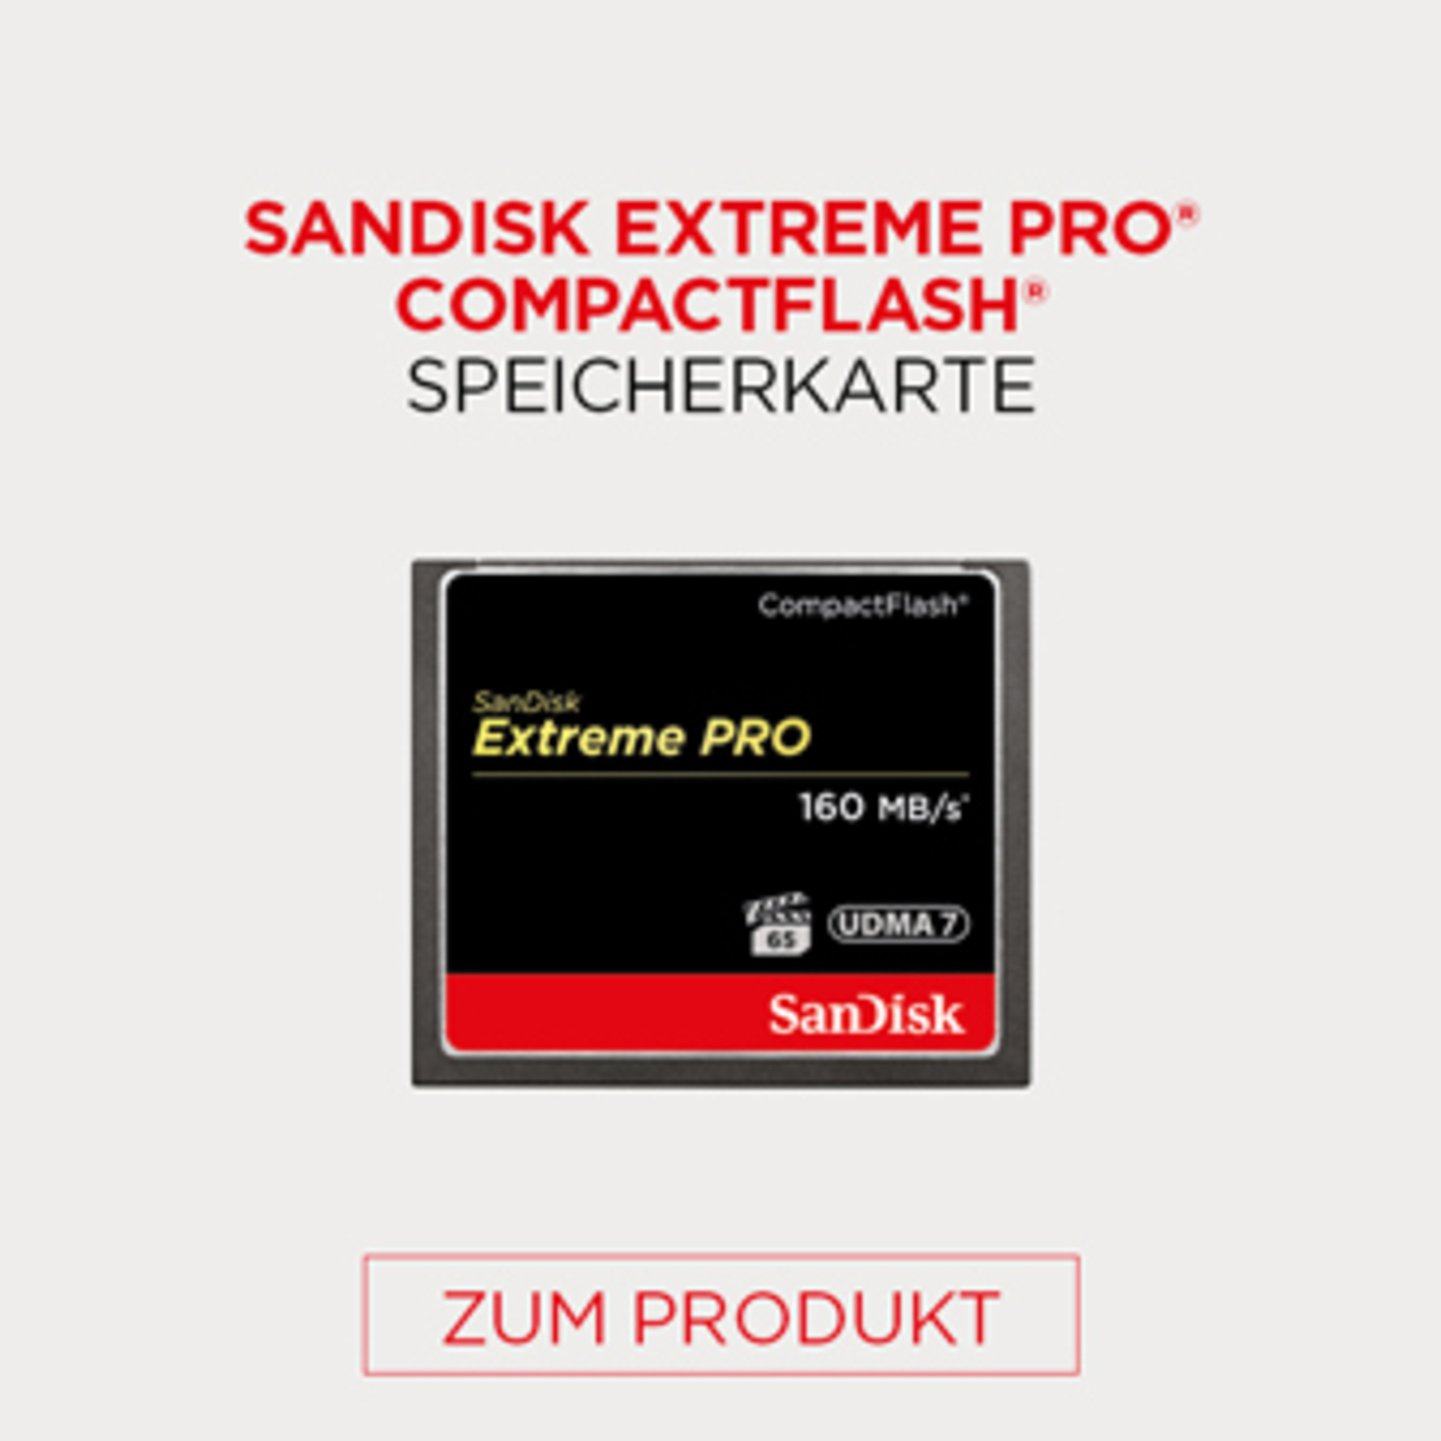 Sandisk Extreme Pro Compactflash Speicherkarte